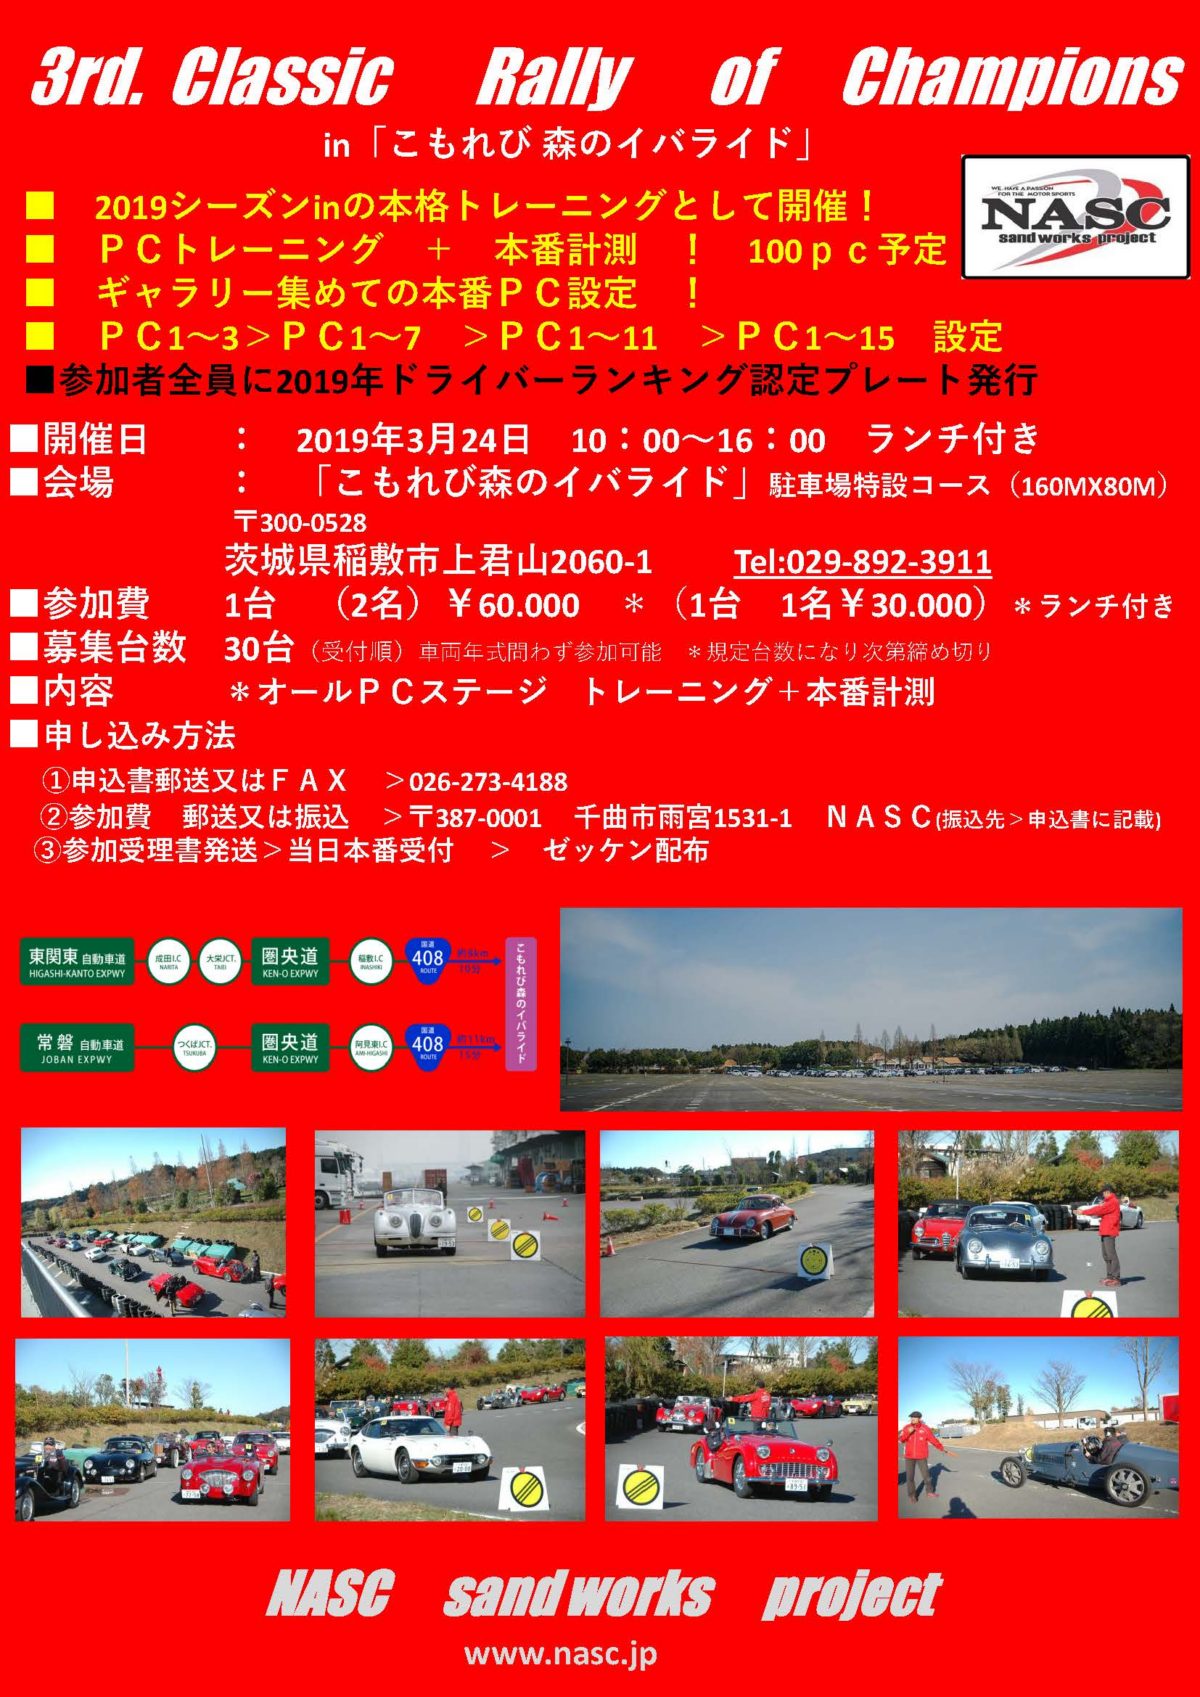 3rd. Classic Rally of Champions in「こもれび 森のイバライド」 